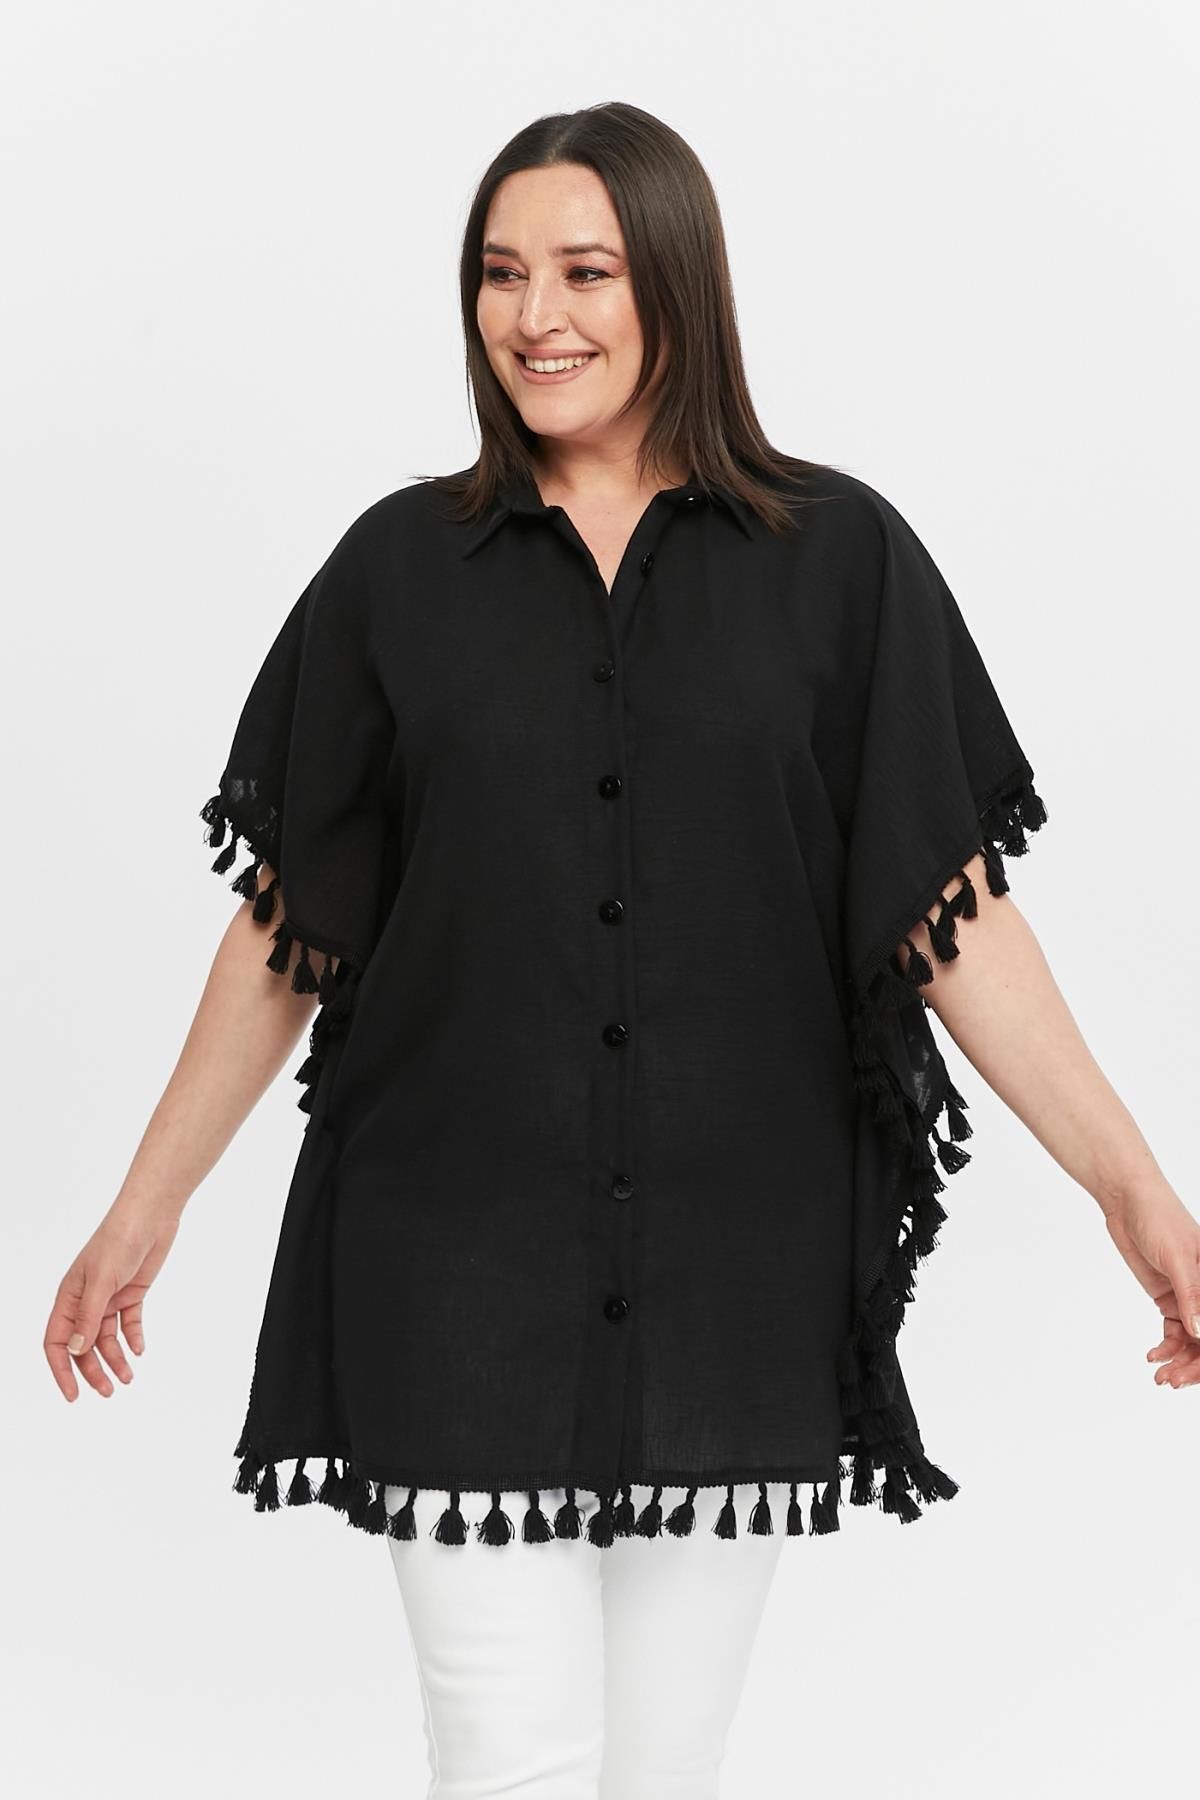 Ebsumu Kadın Büyük Beden Ekstra Rahat Kalıp Püskül Detaylı Siyah Panço & Gömlek